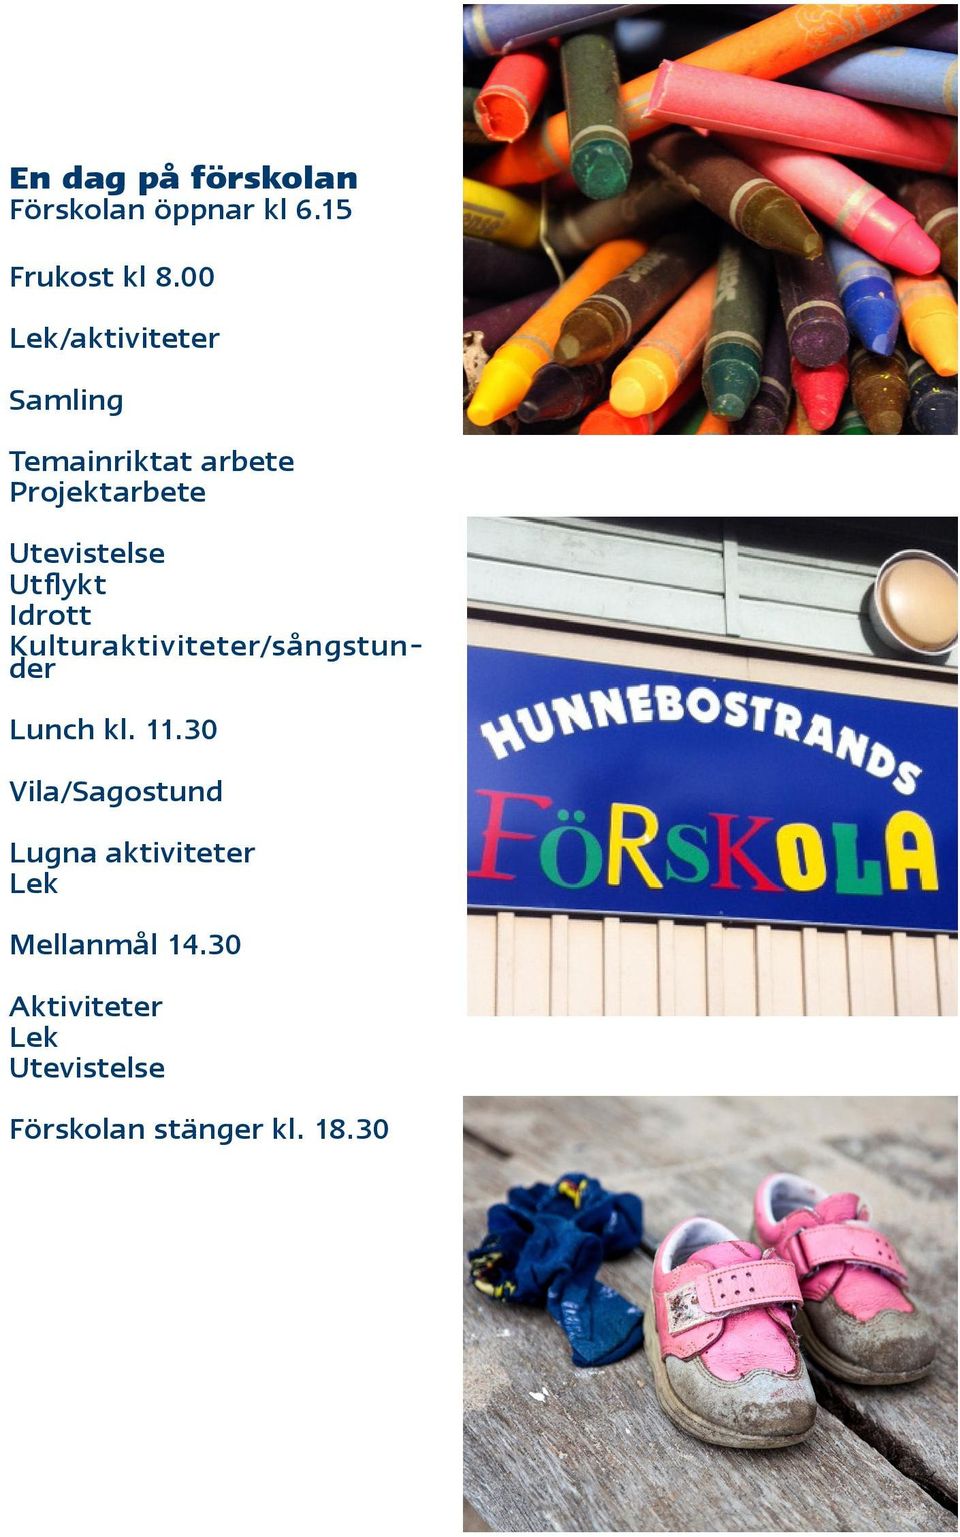 Utflykt Idrott Kulturaktiviteter/sångstunder Lunch kl. 11.